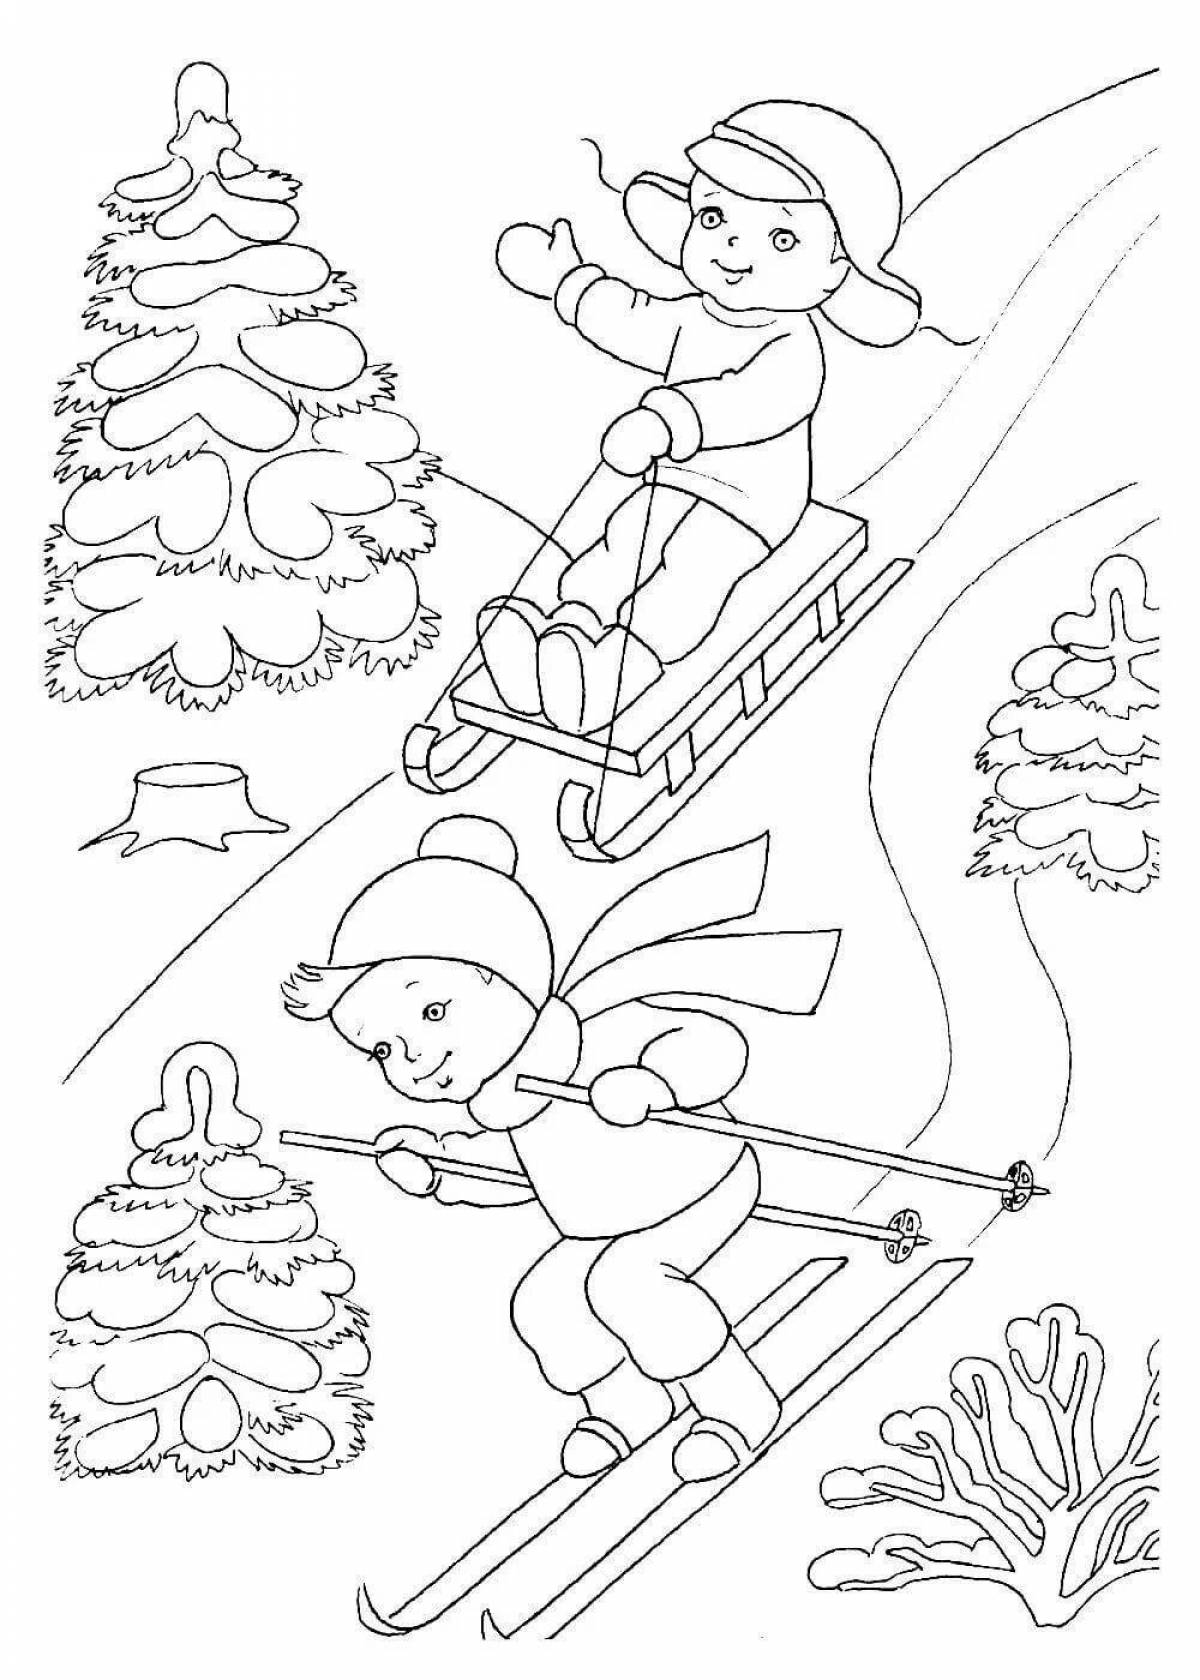 Fun winter fun coloring book